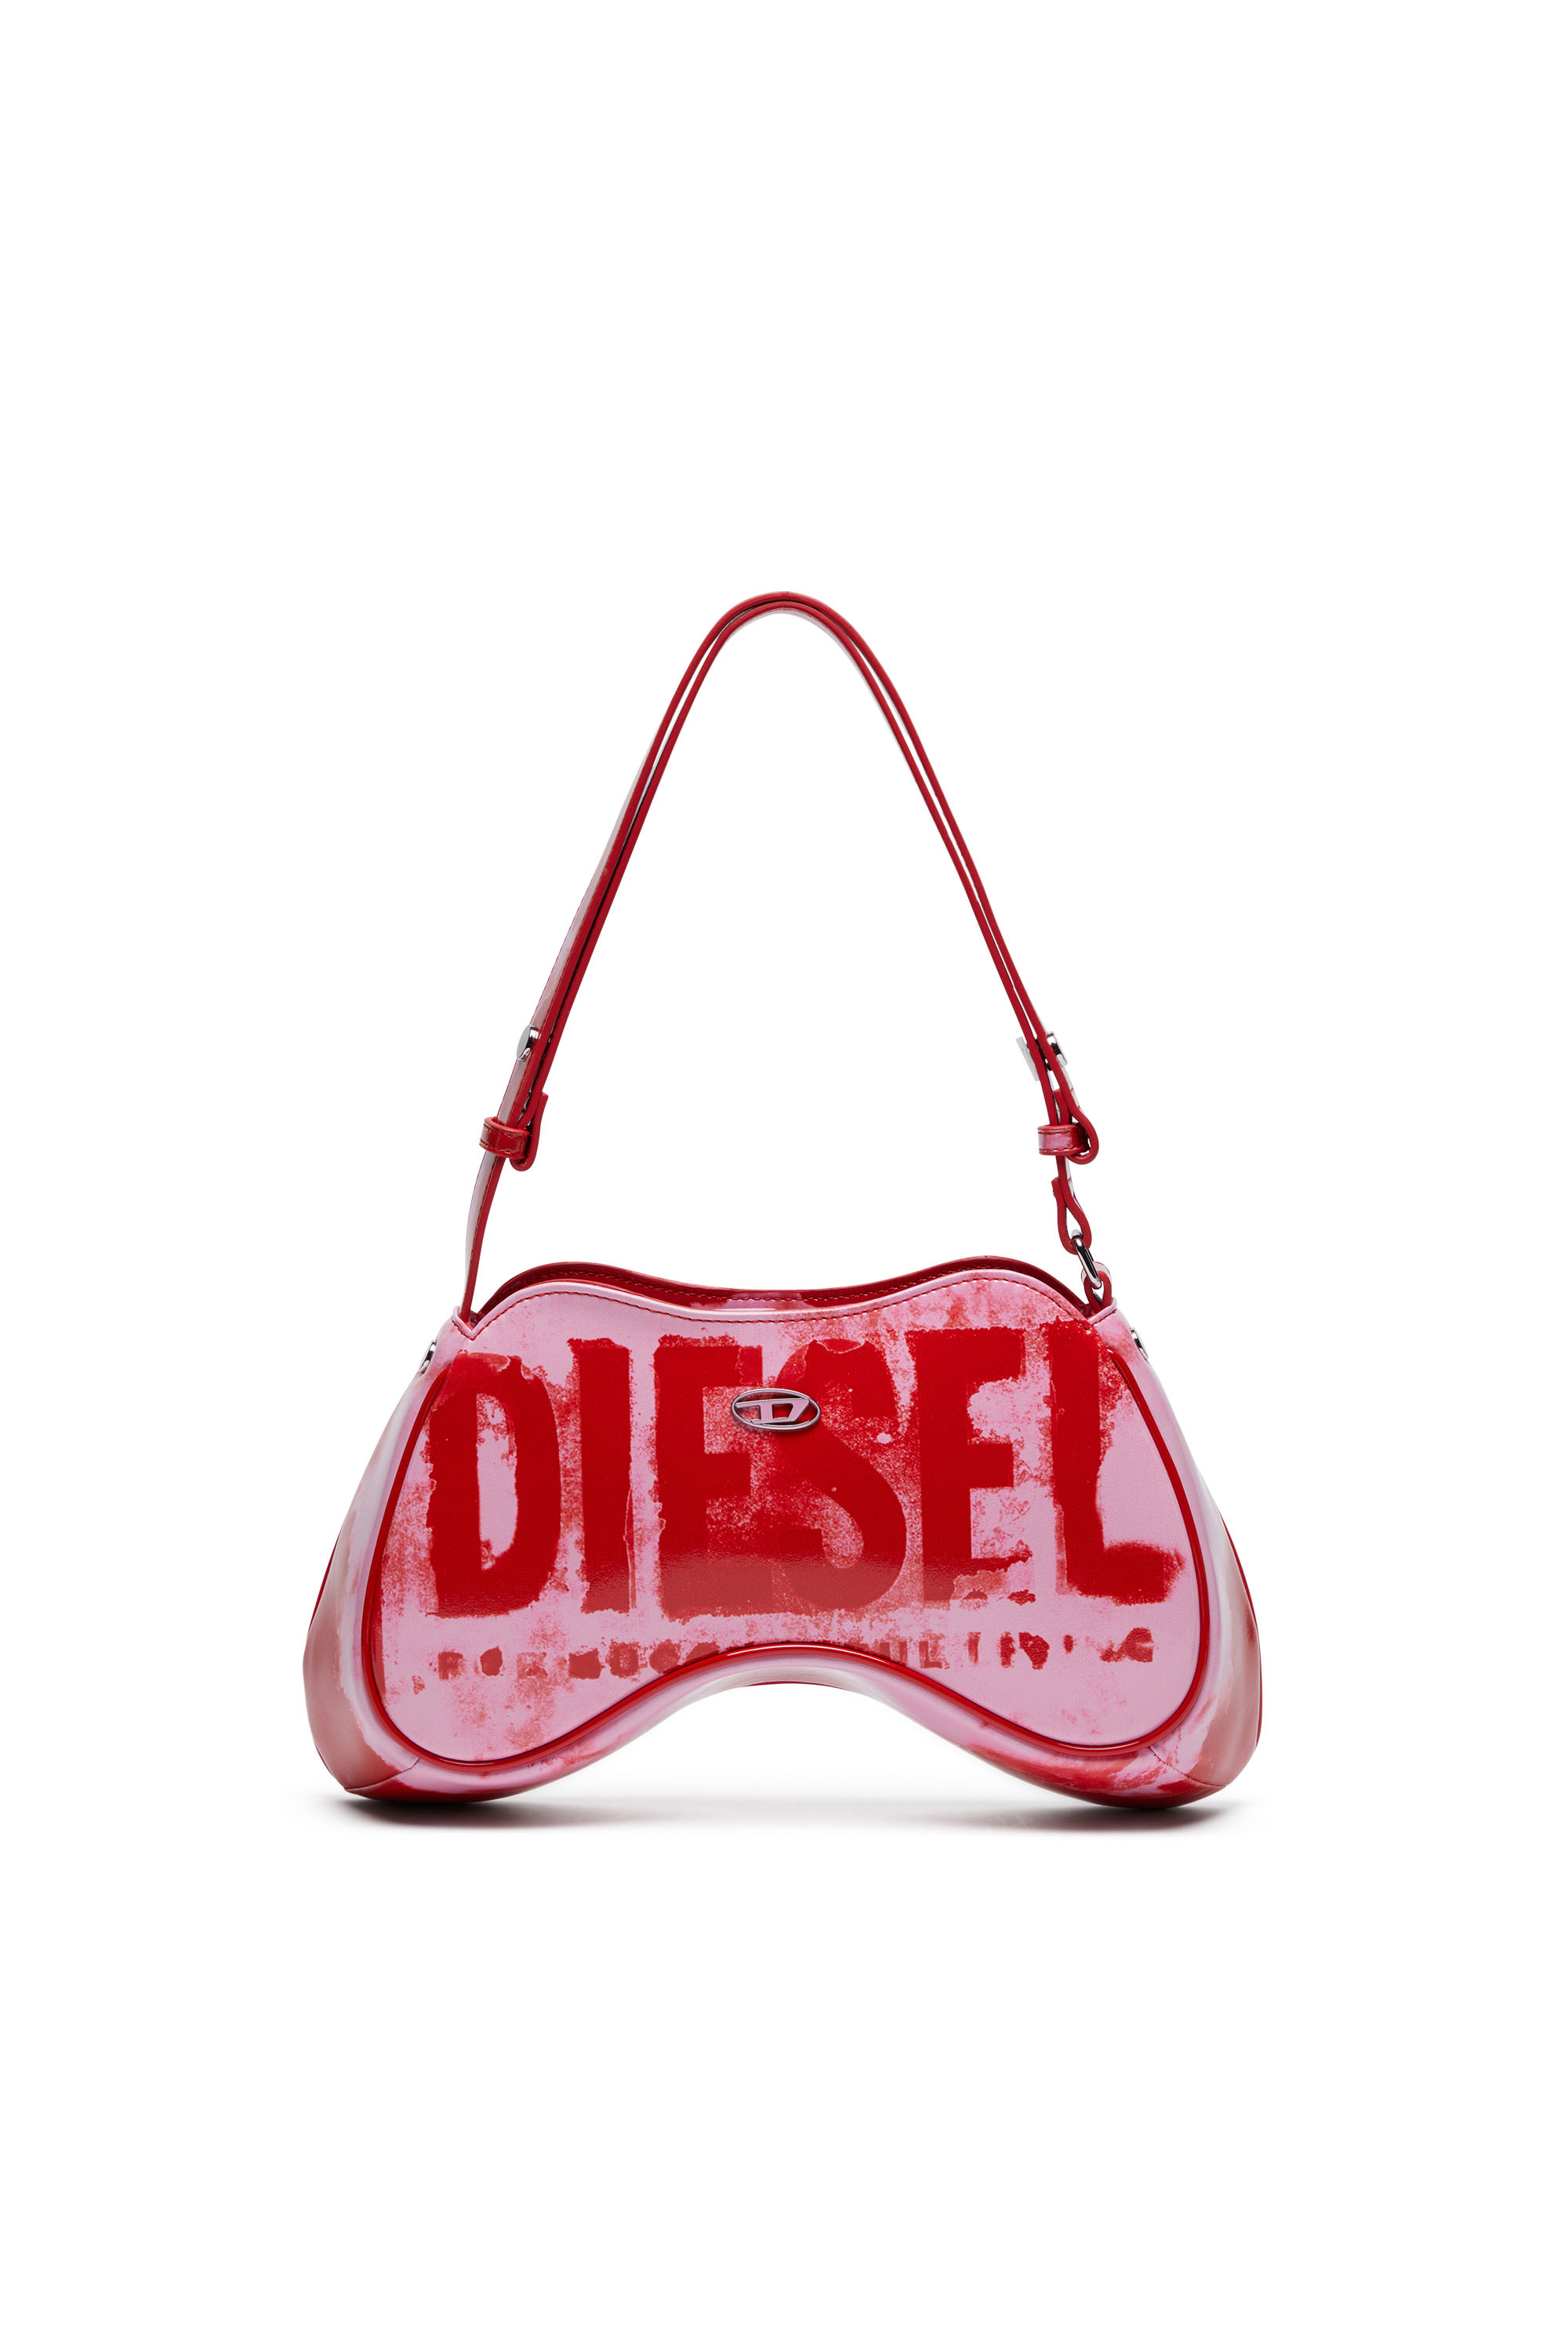 Diesel - PLAY SHOULDER, Pink/Red - Image 1